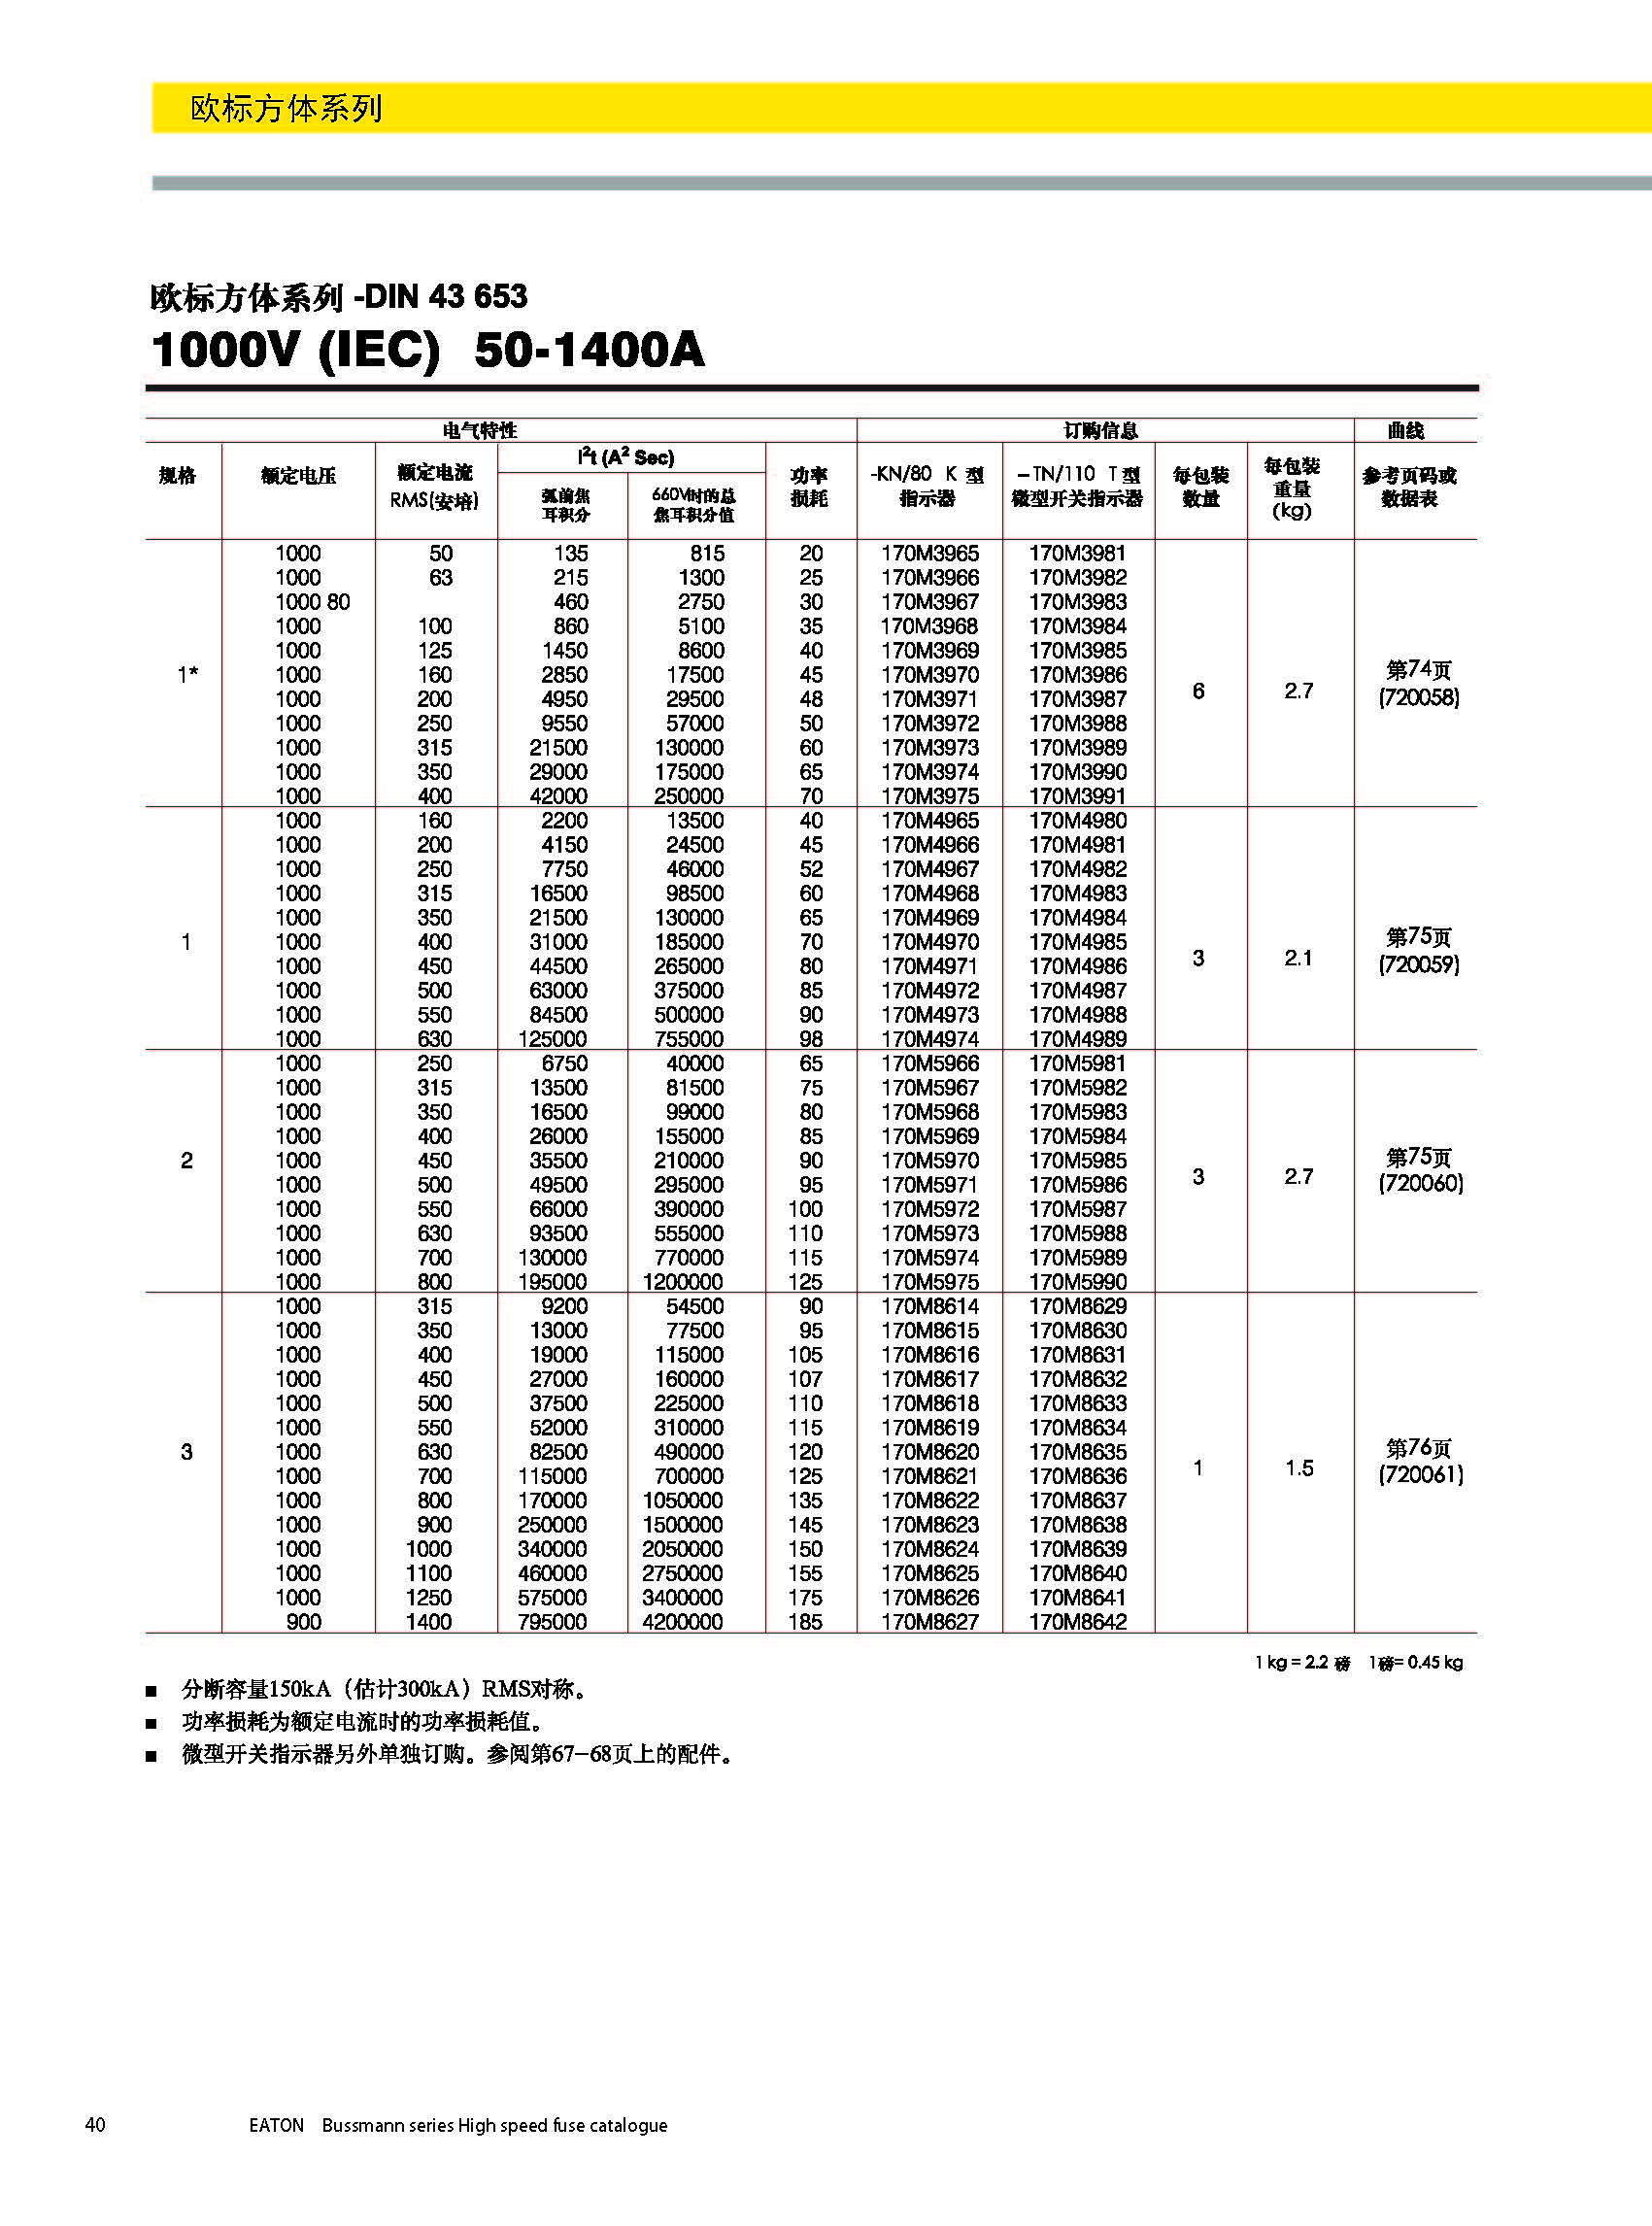 歐標方體DIN43653 1000V 50-1400A產品選型參數